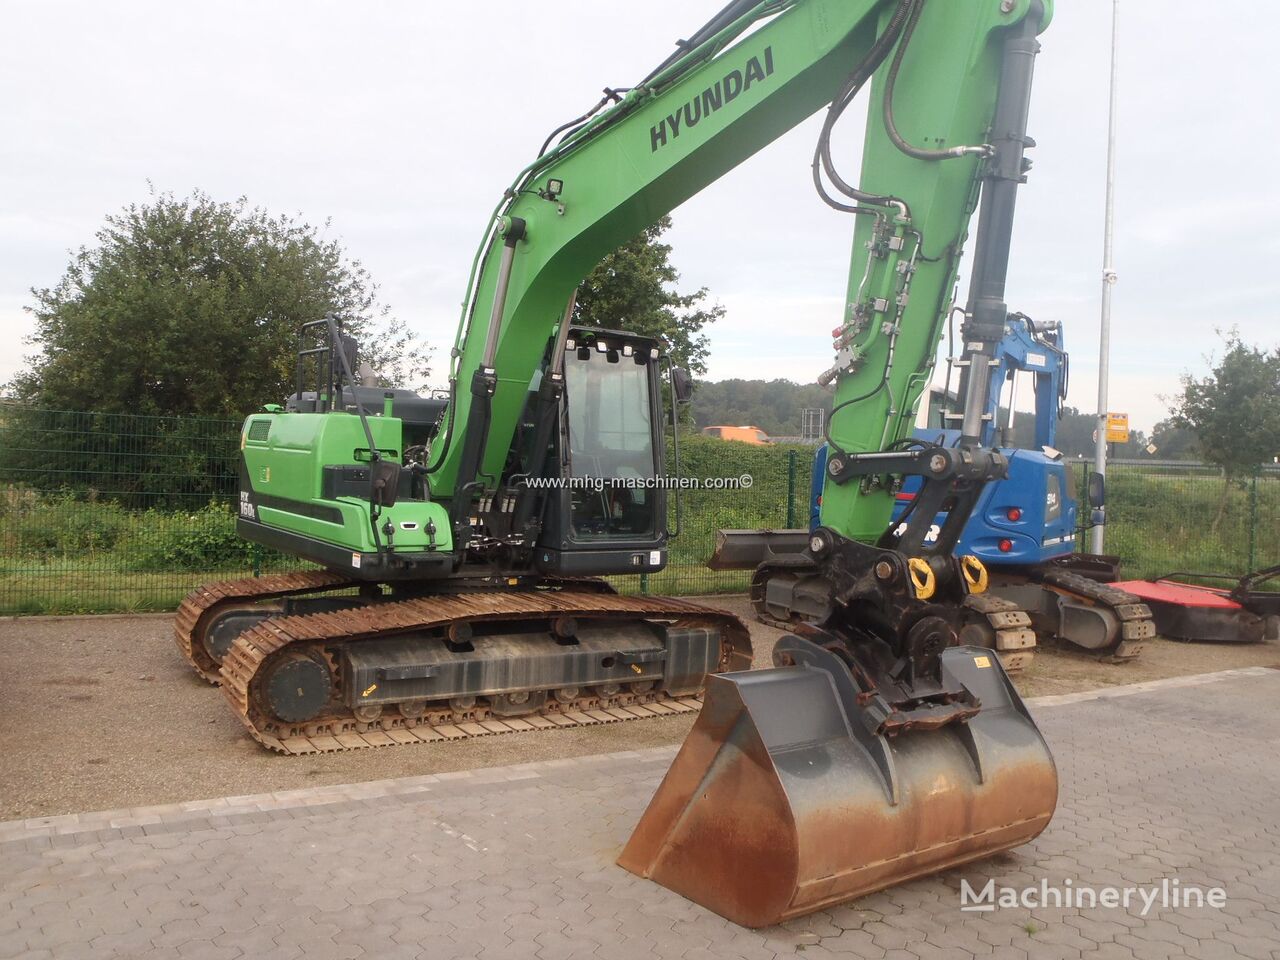 Hyundai HX160L-Wie Neu-Demo Condition tracked excavator